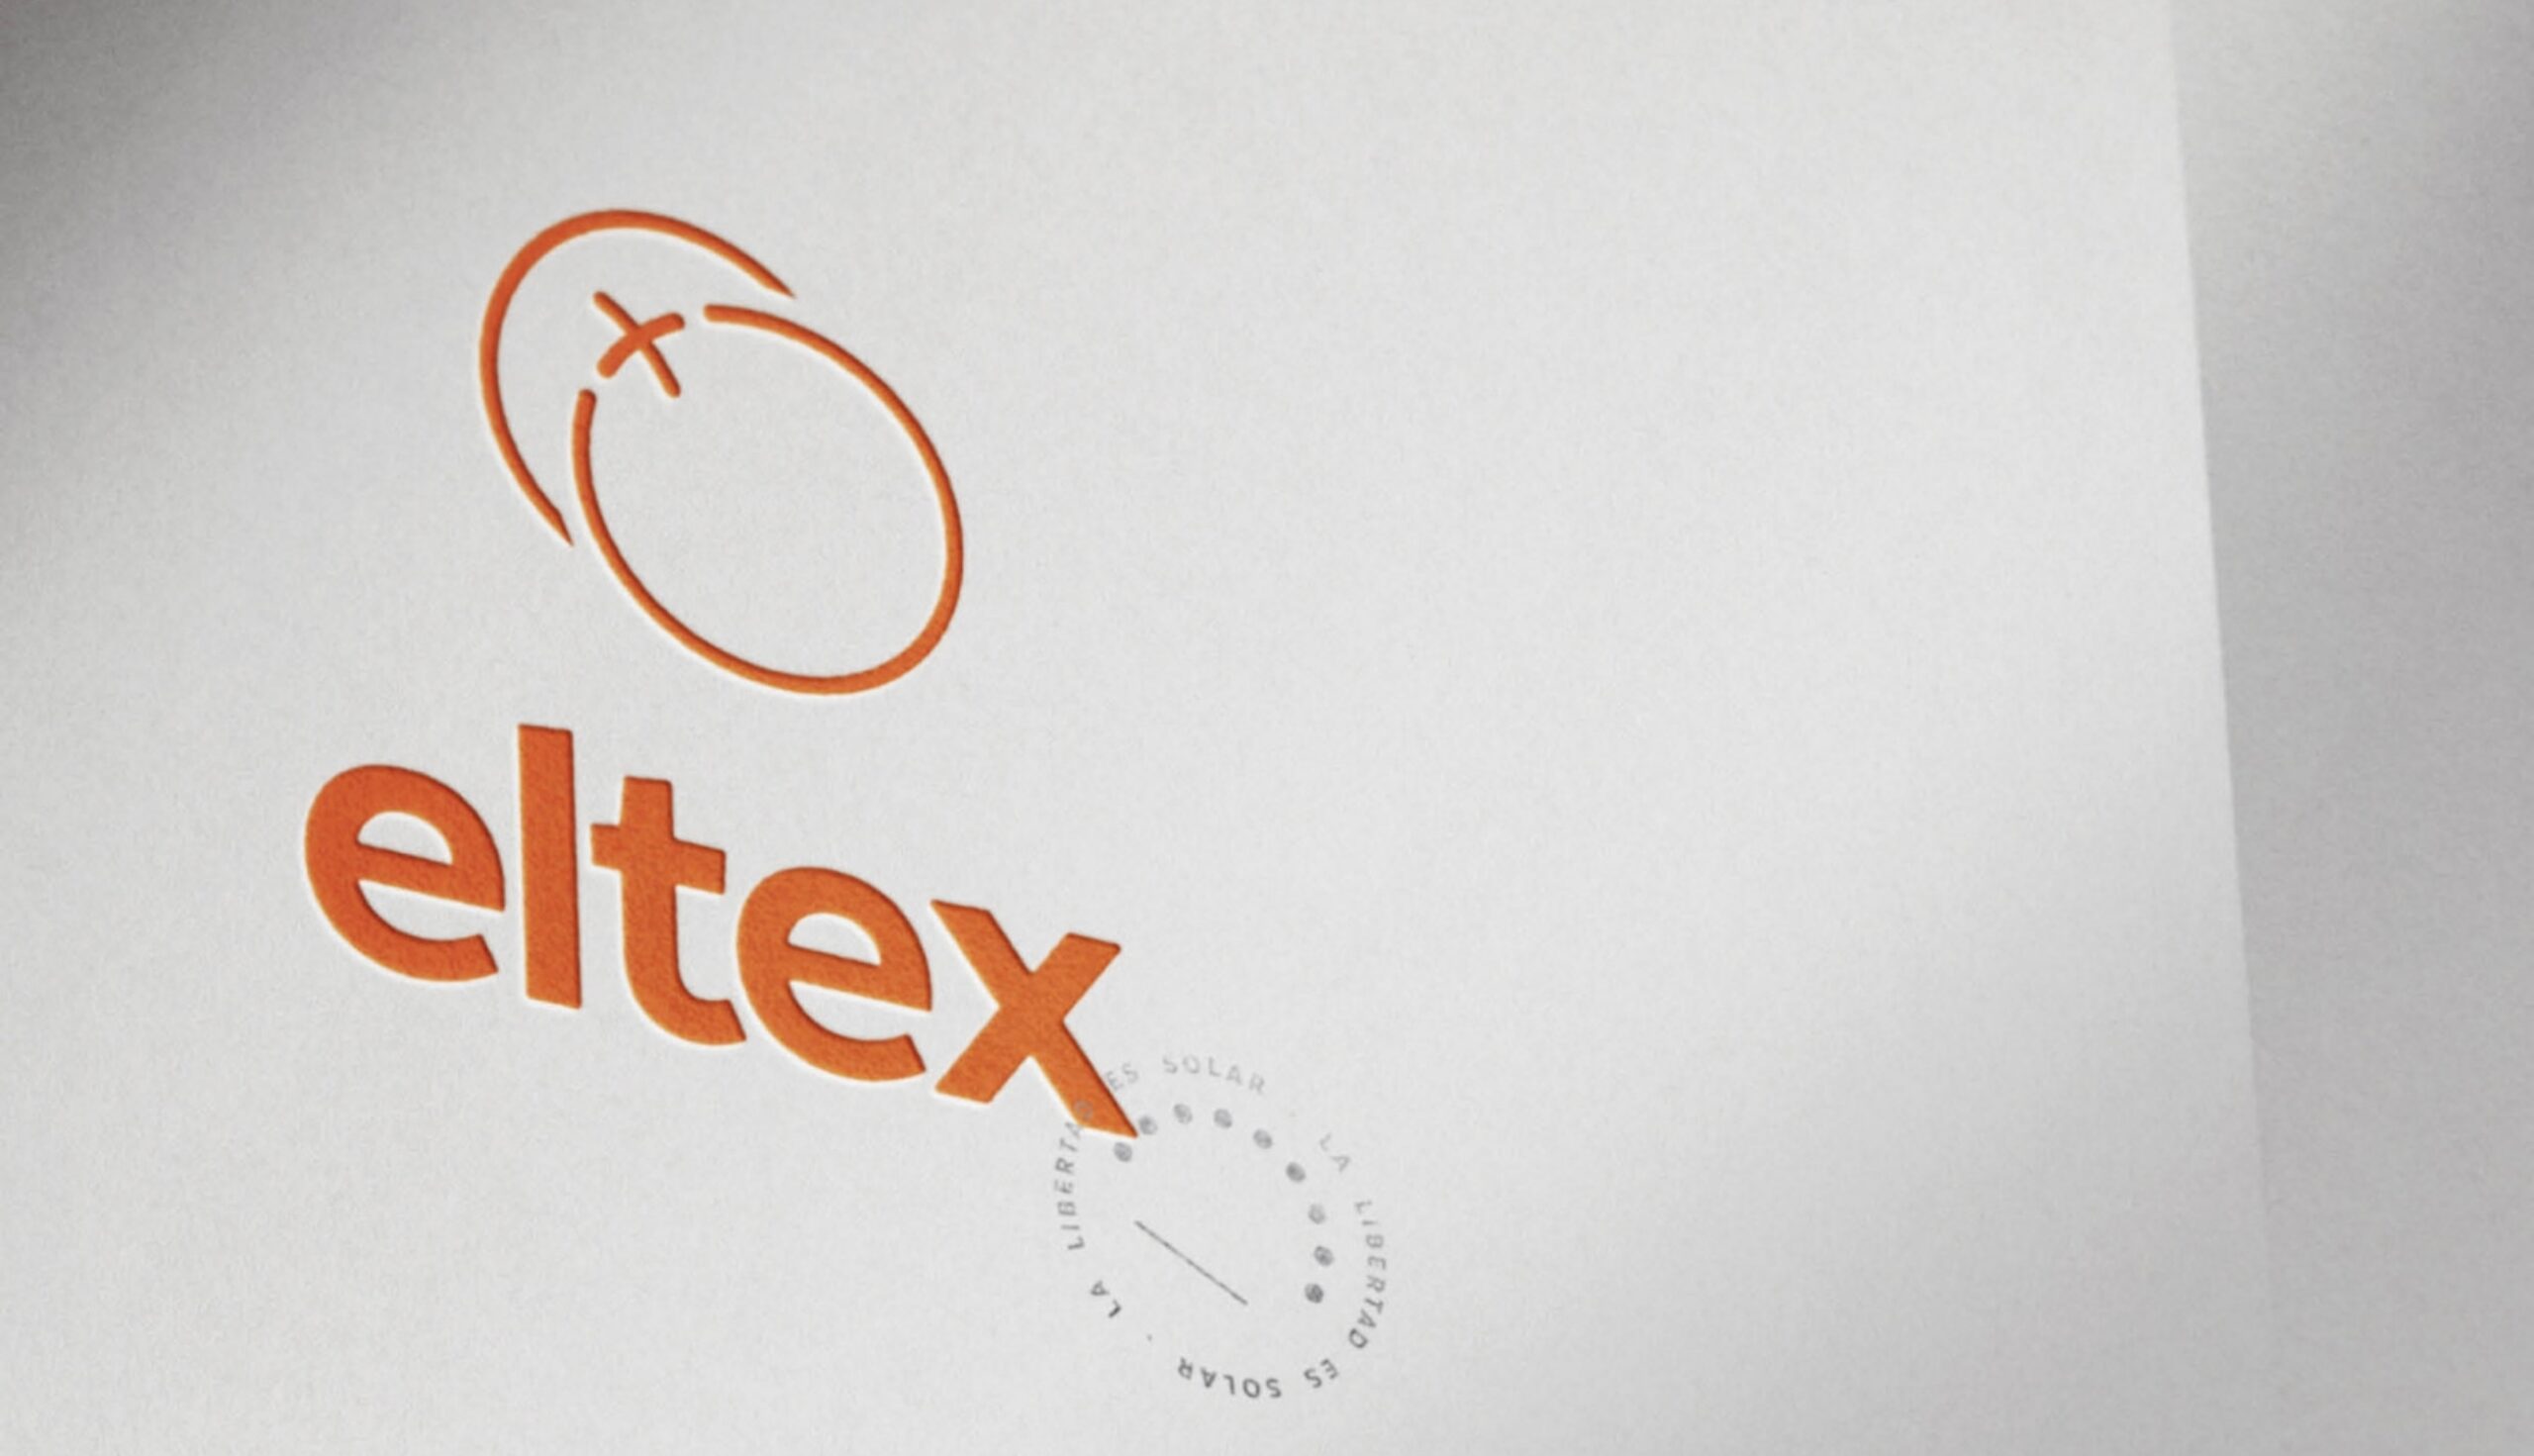 ELTEX Concept WEB 01 012 1804x0